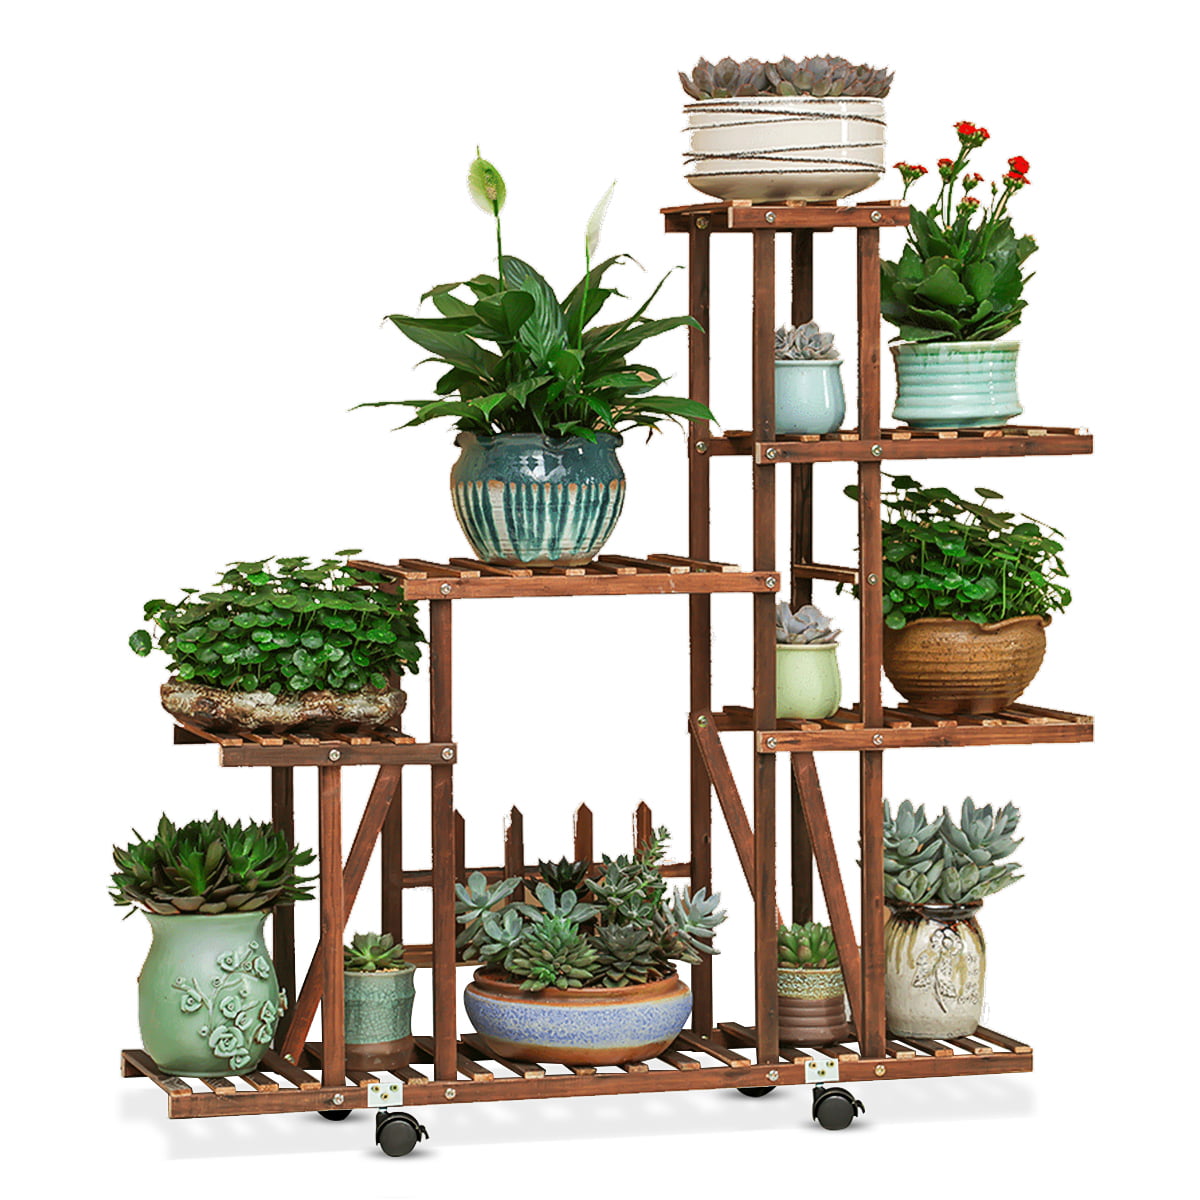 4 Tier Garden Wooden Plant Stand Pot Holder Display Shelf Indoor/Outdoor Wheels